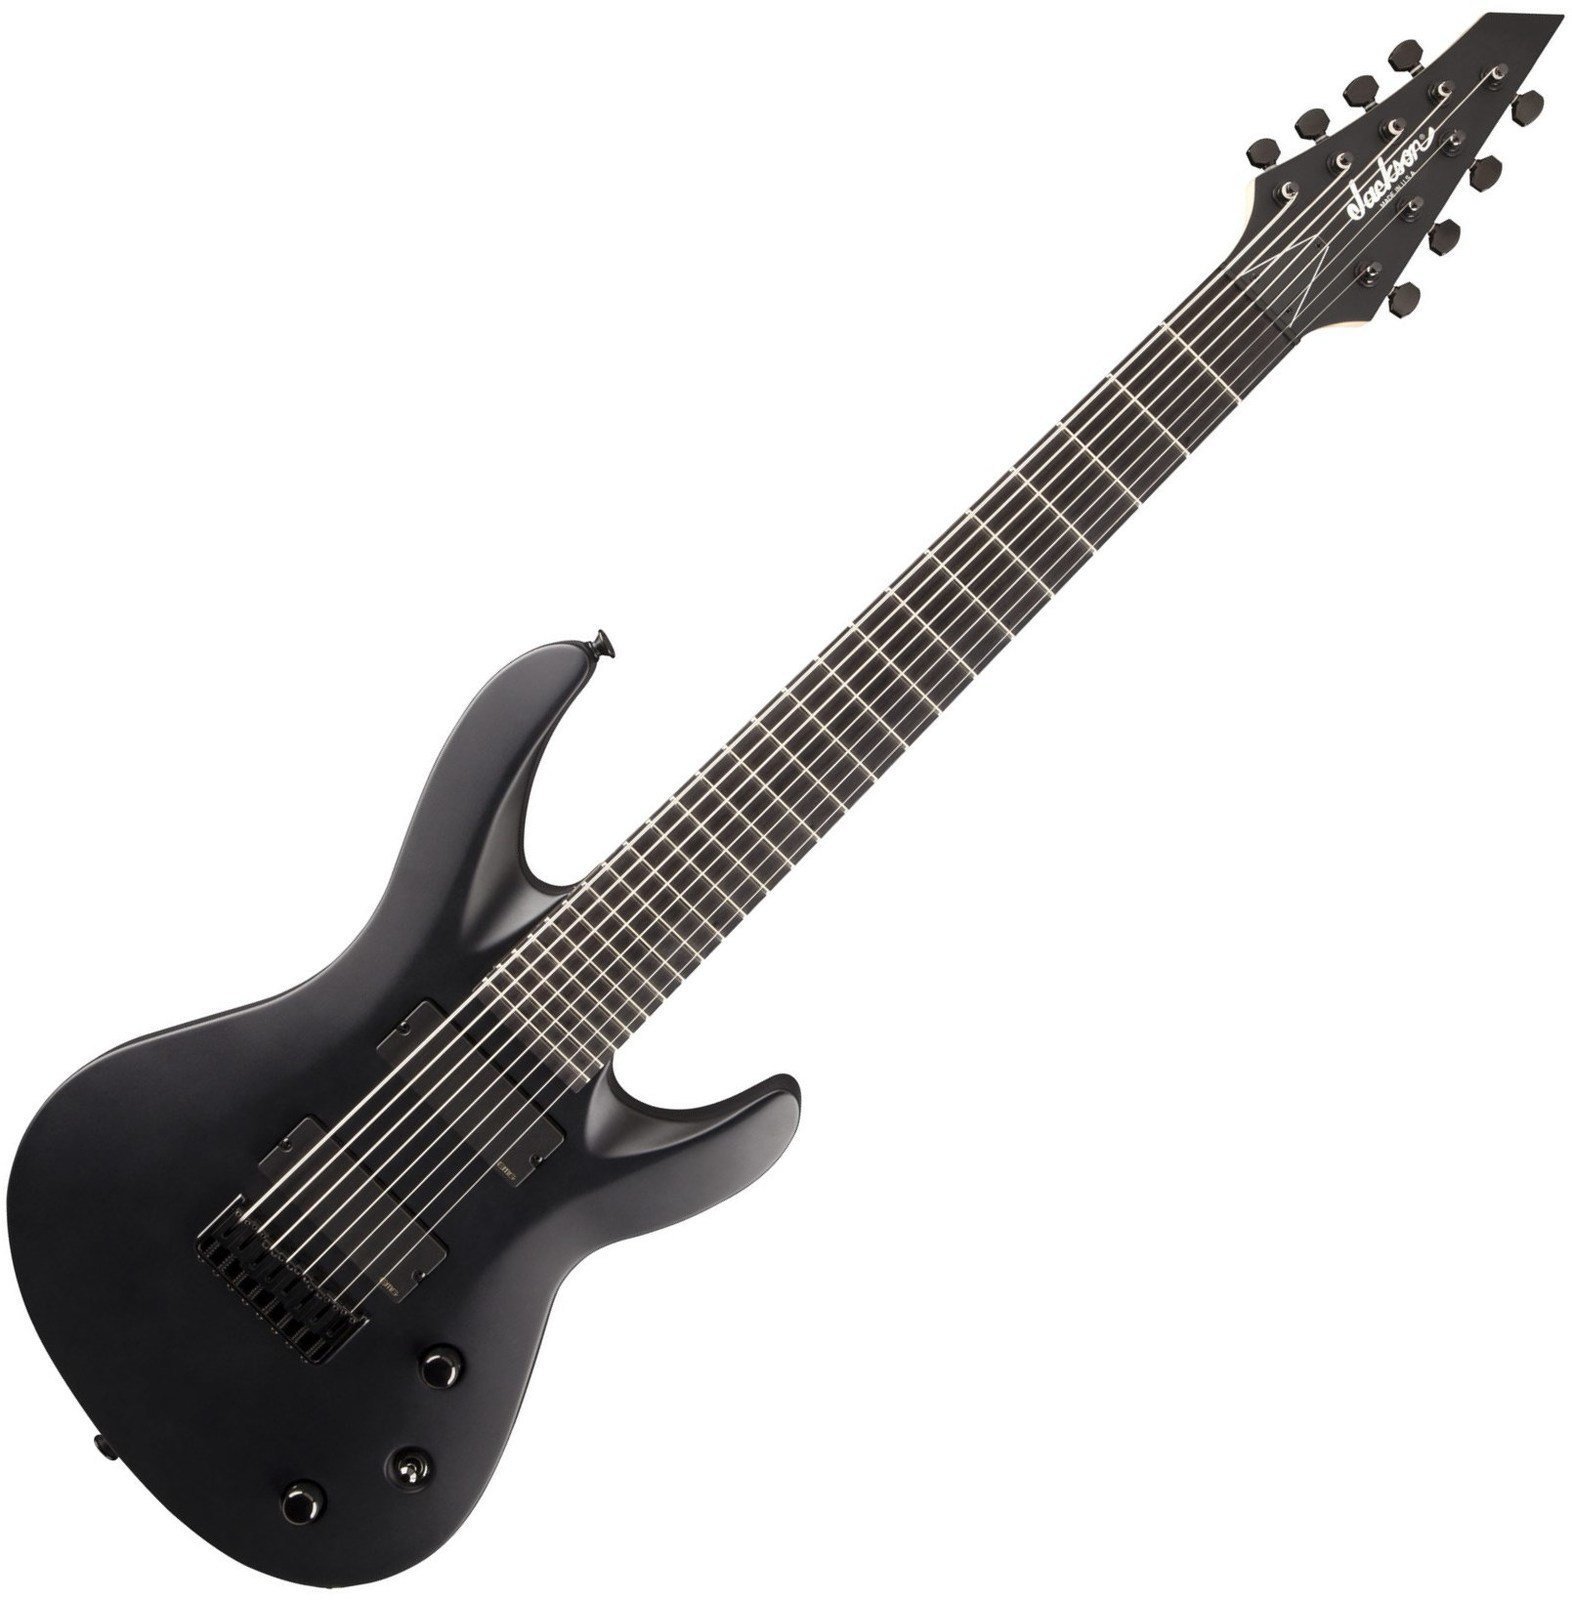 8-saitige E-Gitarre Jackson USA Select B8MG Satin Black